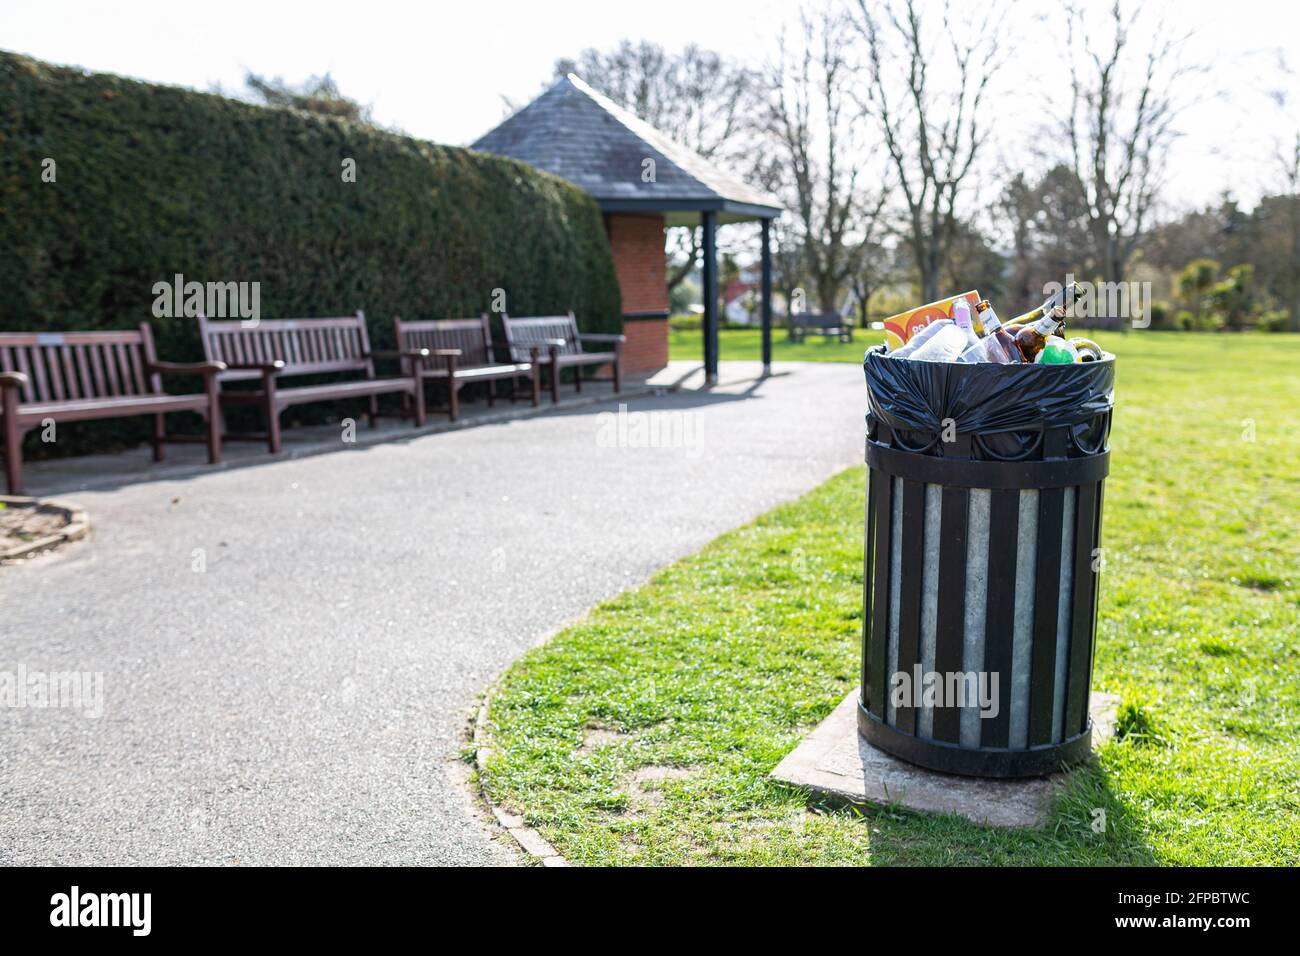 Woodbridge, Suffolk, Großbritannien April 09 2021: Voller Mülleimer in einem öffentlichen Park, der seit langem nicht mehr von den behörden geleert wurde Stockfoto